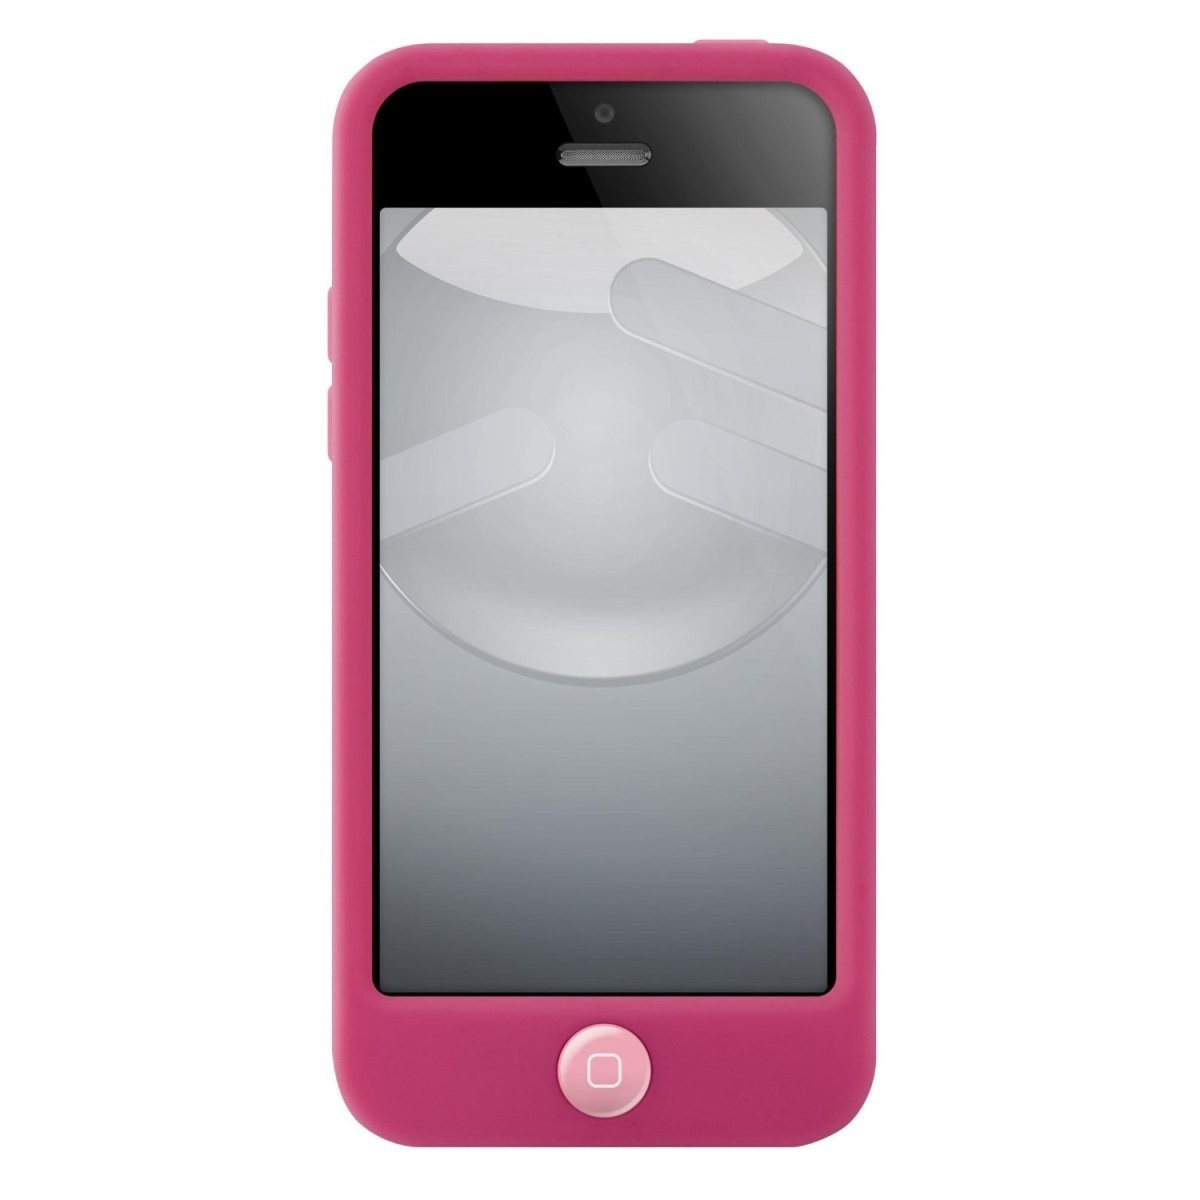 スマホケース カバー iPhone5c SwitchEasy ピンク レッド 赤 ジャケット シリコン イヤホンジャック 保護フィルム クロス_画像3